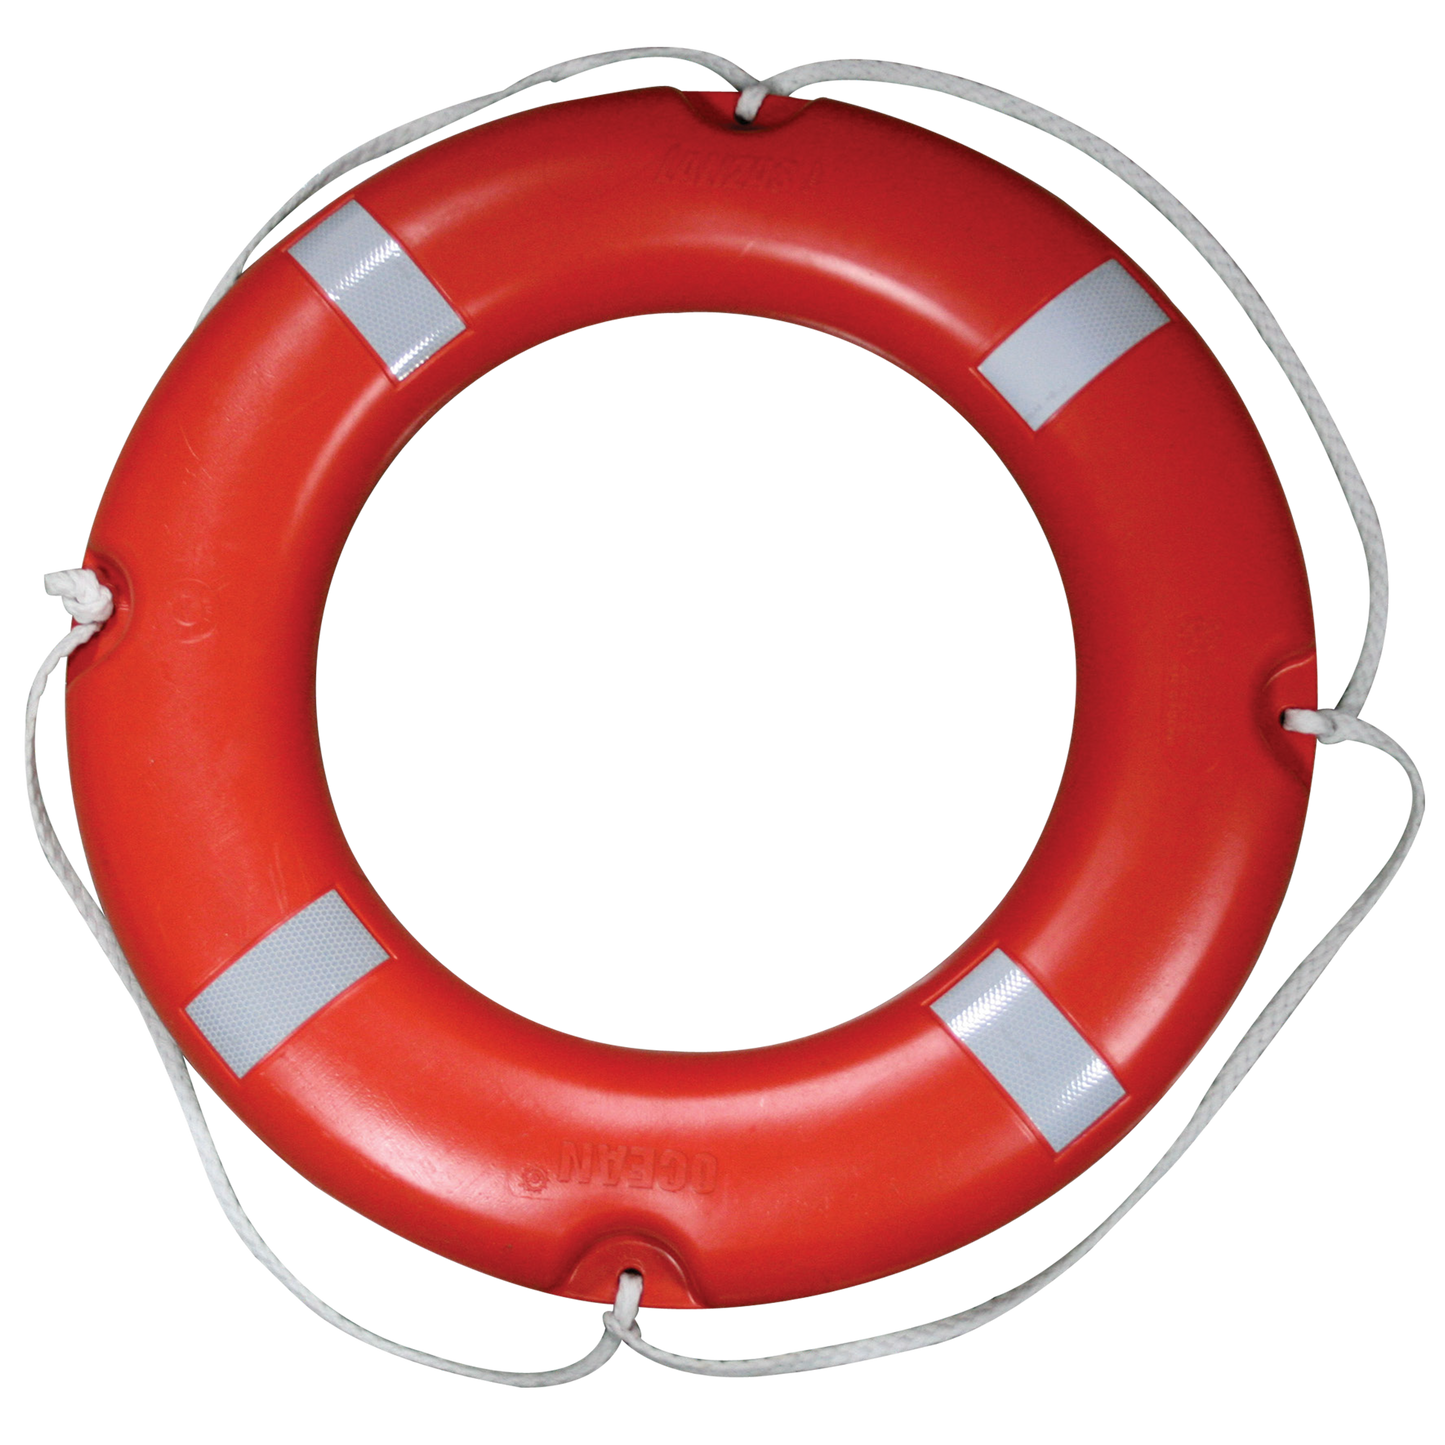 Lalizas Lifebuoy Ring SOLAS 2,5kg®